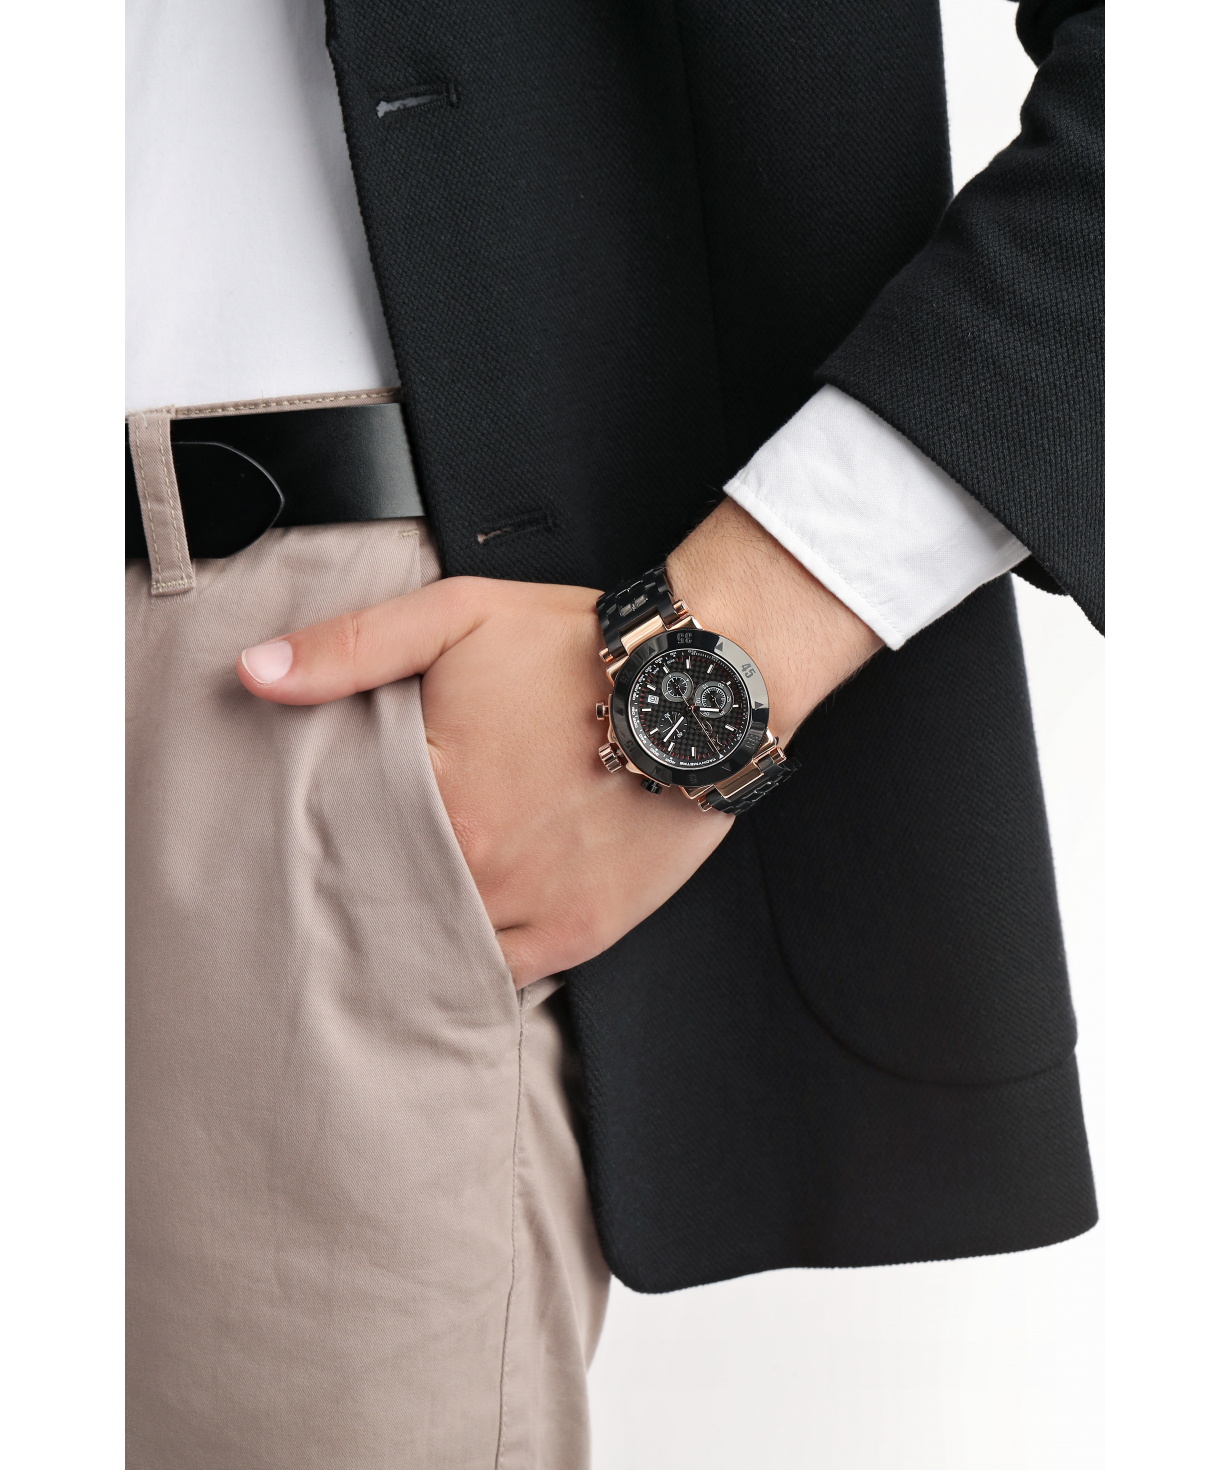 Ժամացույց «Gc» ձեռքի   X90006G2S